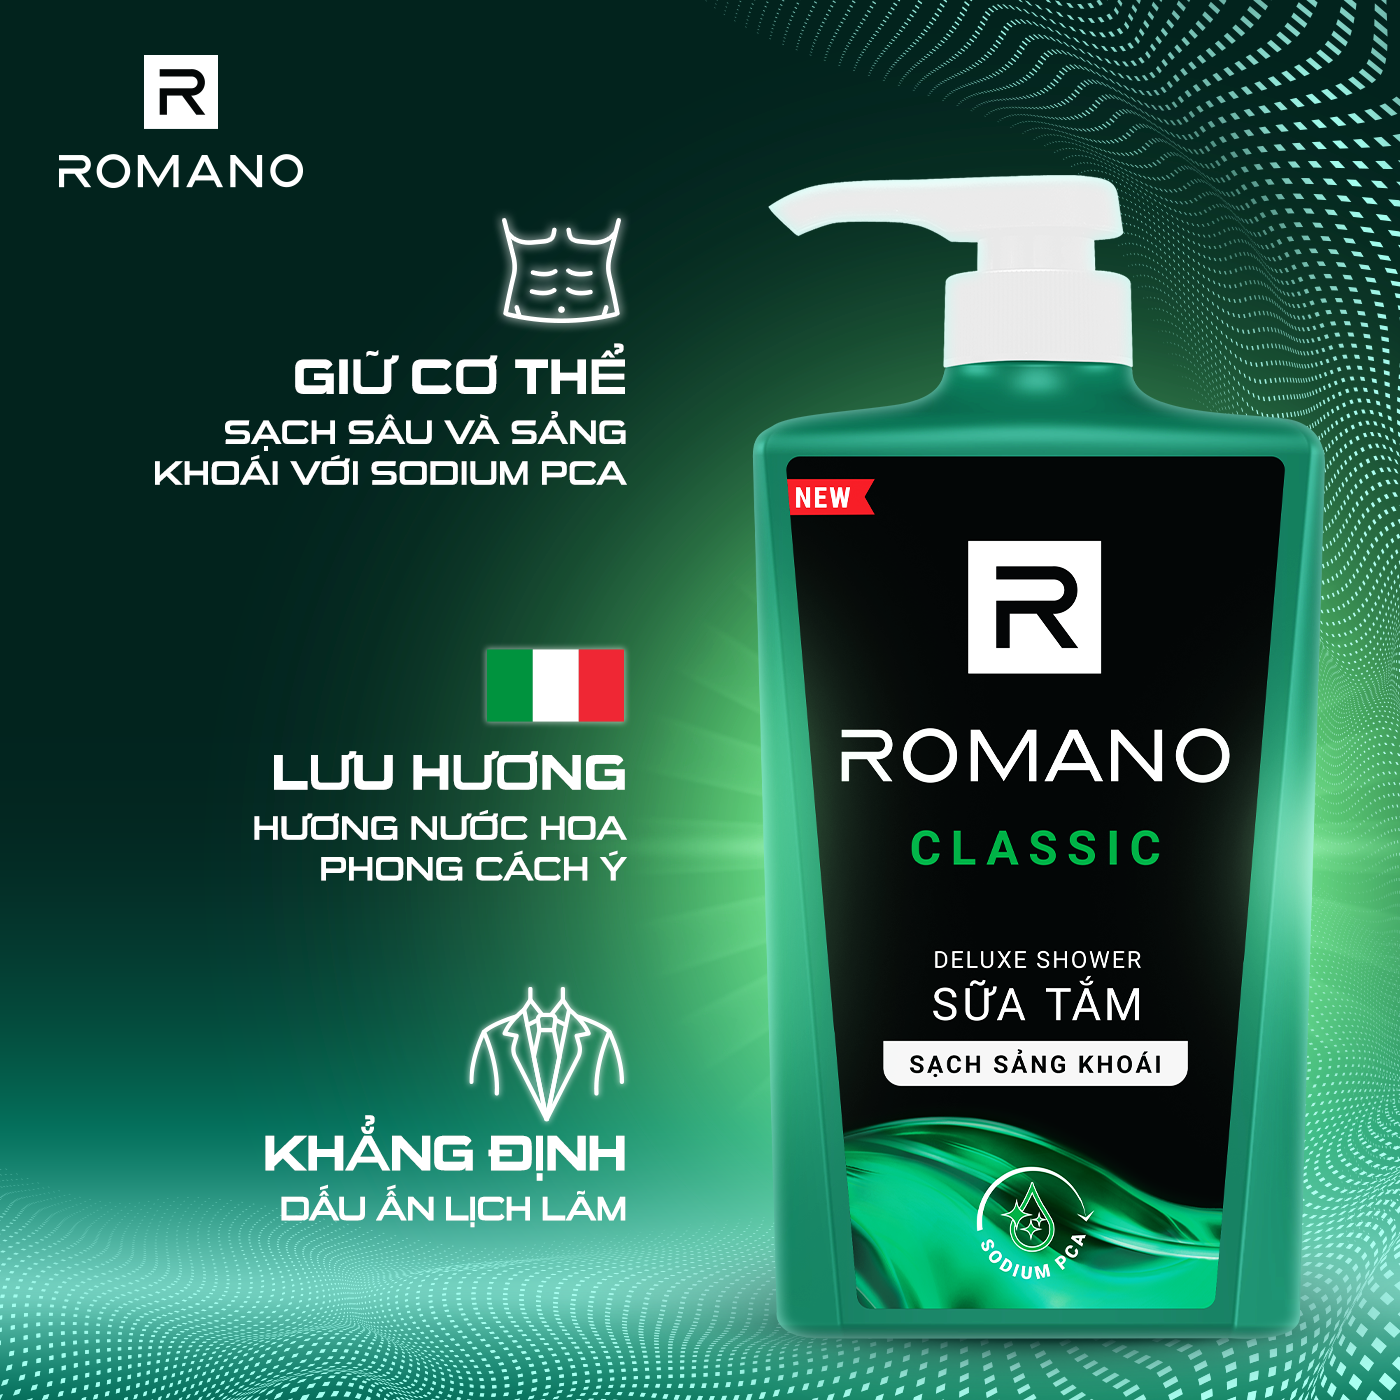 Sữa tắm cao cấp Romano Classic cổ điển lịch lãm phiên bản Deluxe sạch sáng khoái 180gr